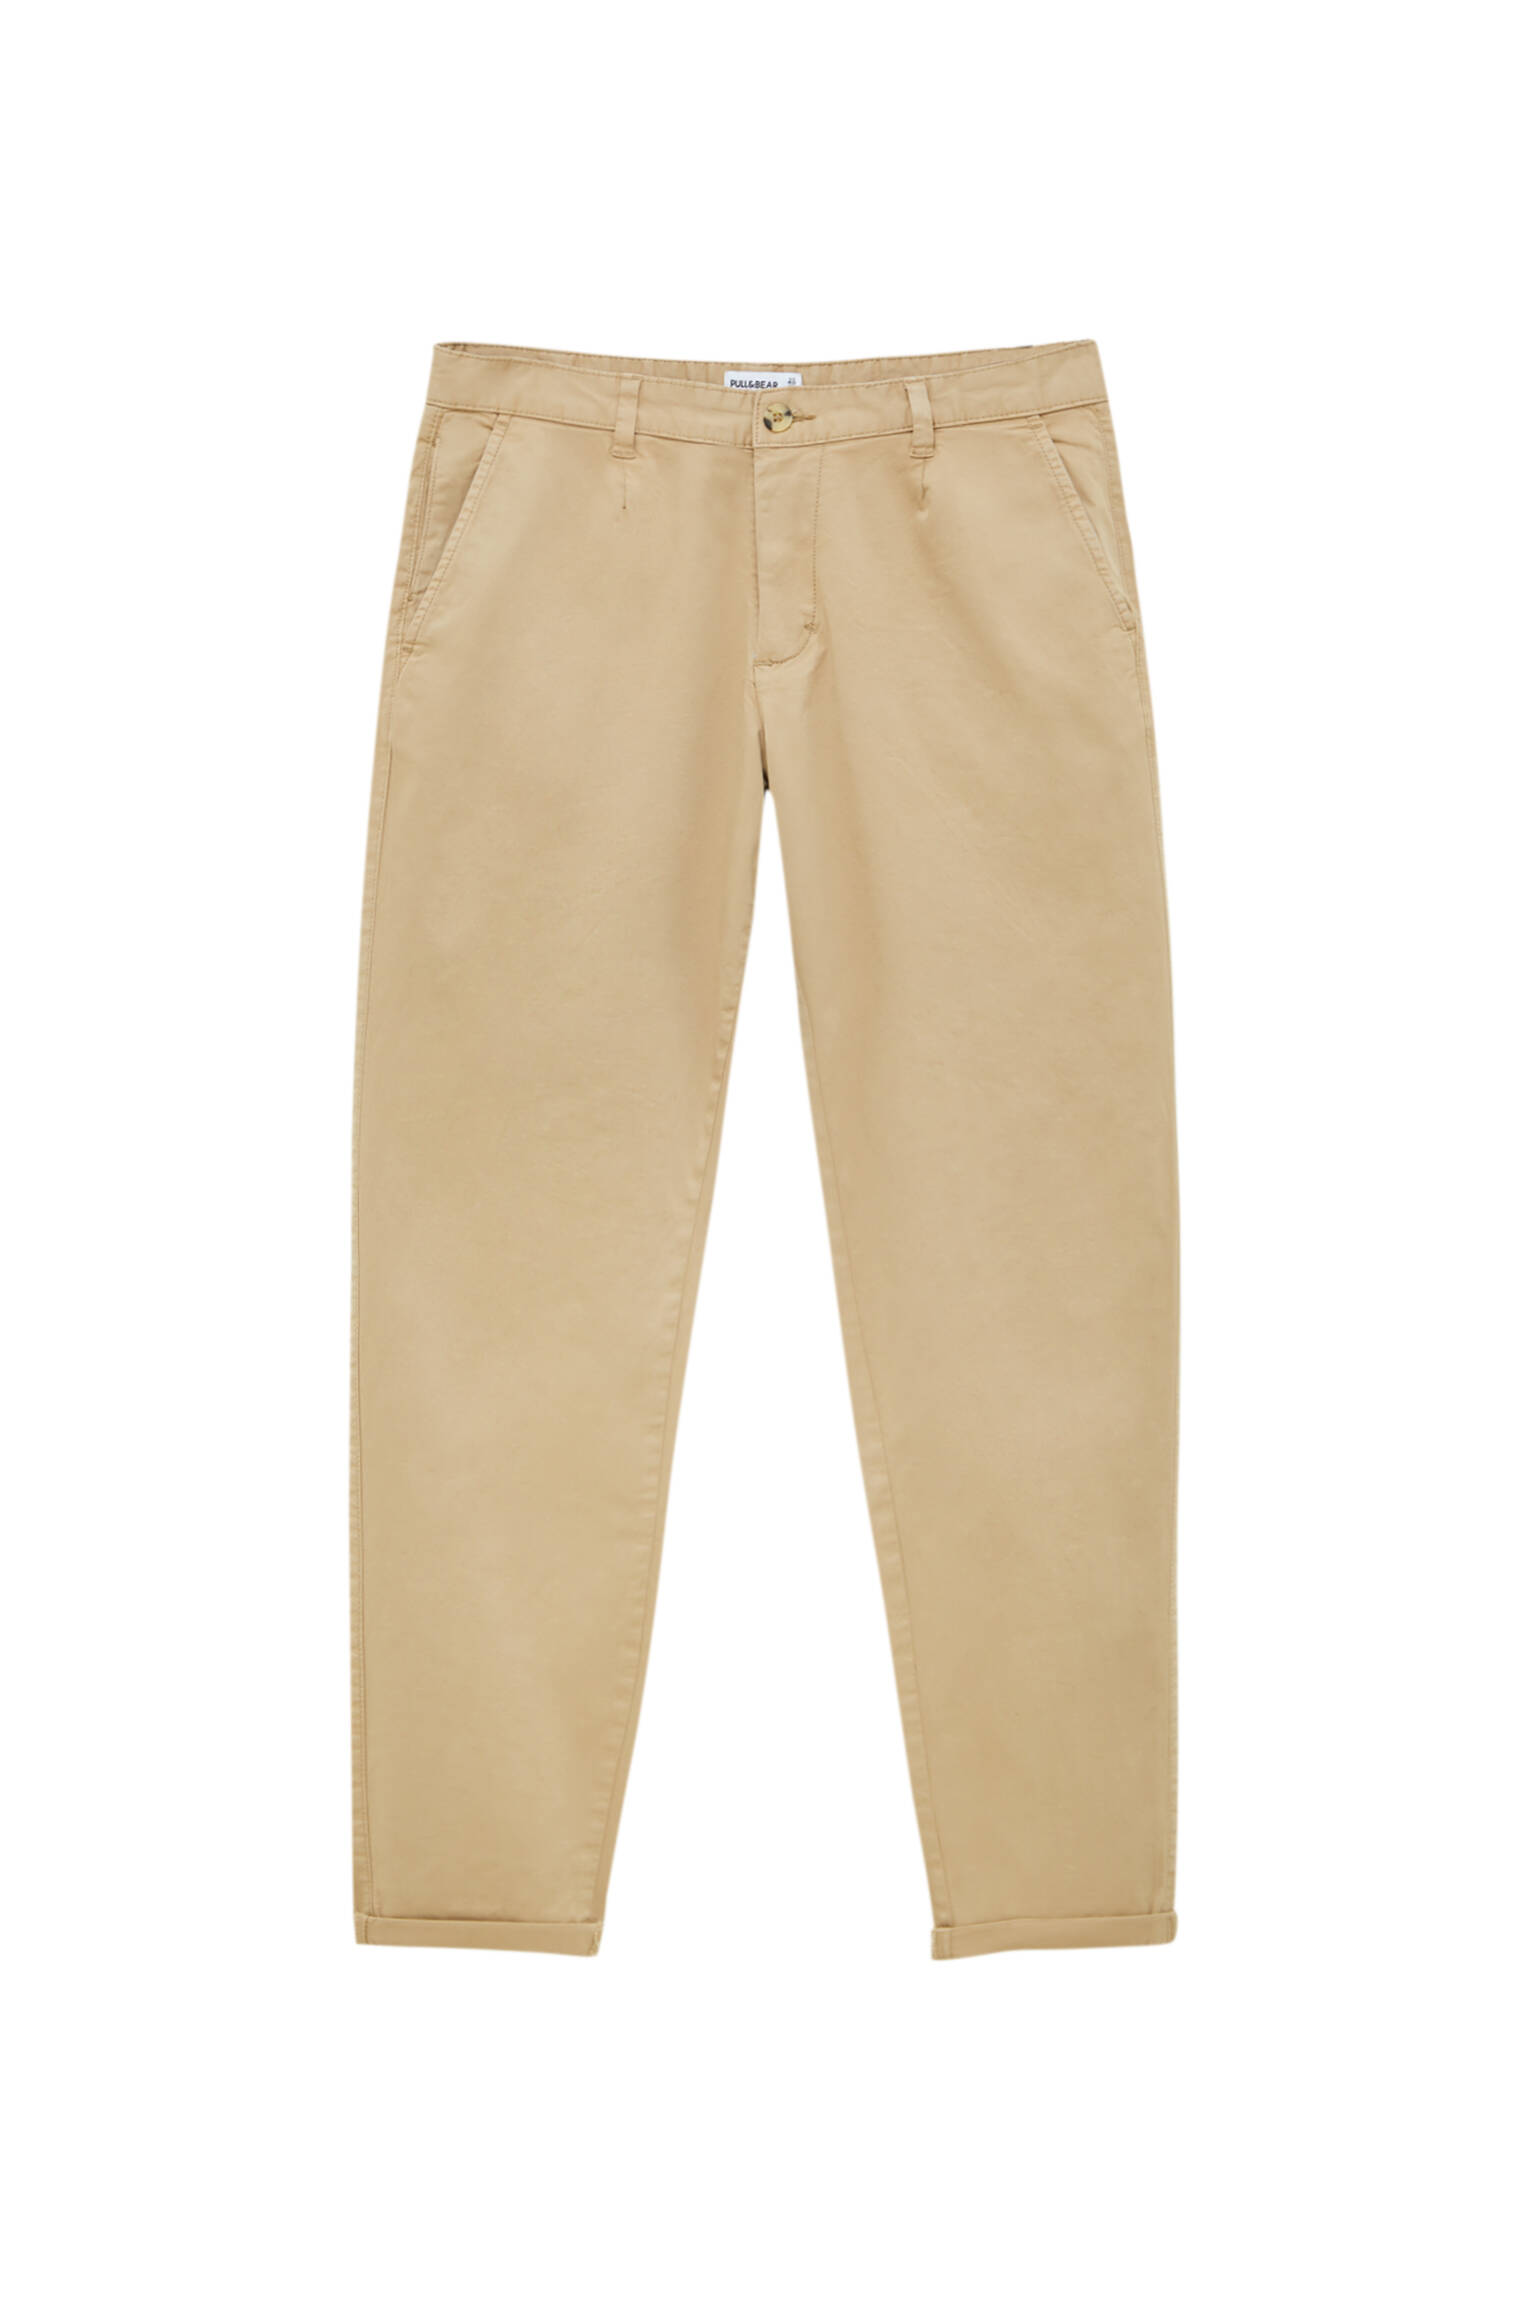 Pull&bear Homme Pantalon Chino Slim En Coton Garment Dyed Légèrement Extensible, Avec Cinq Poches, P